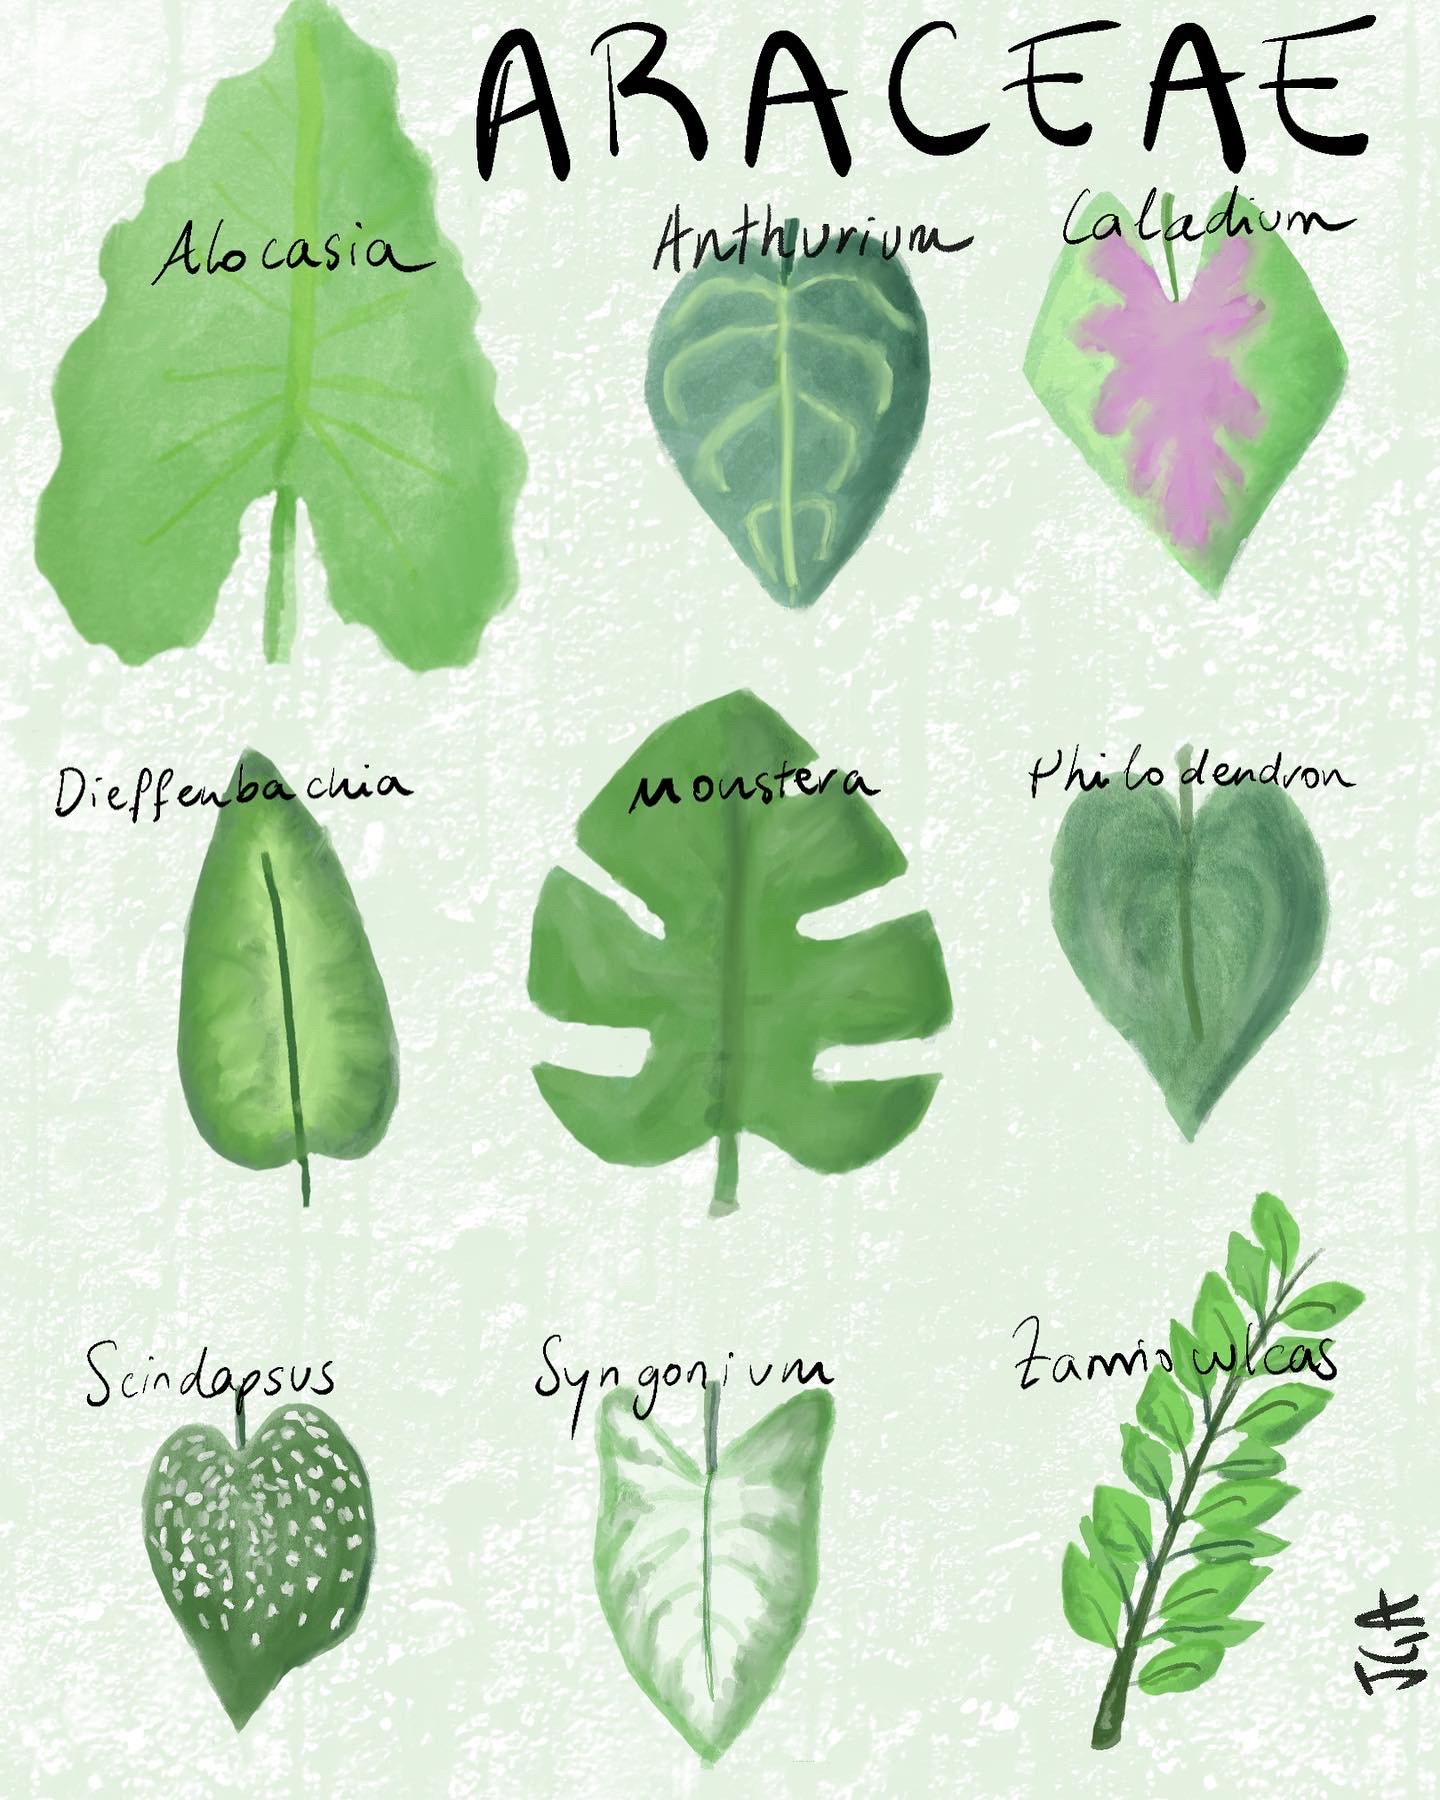 Araceae family